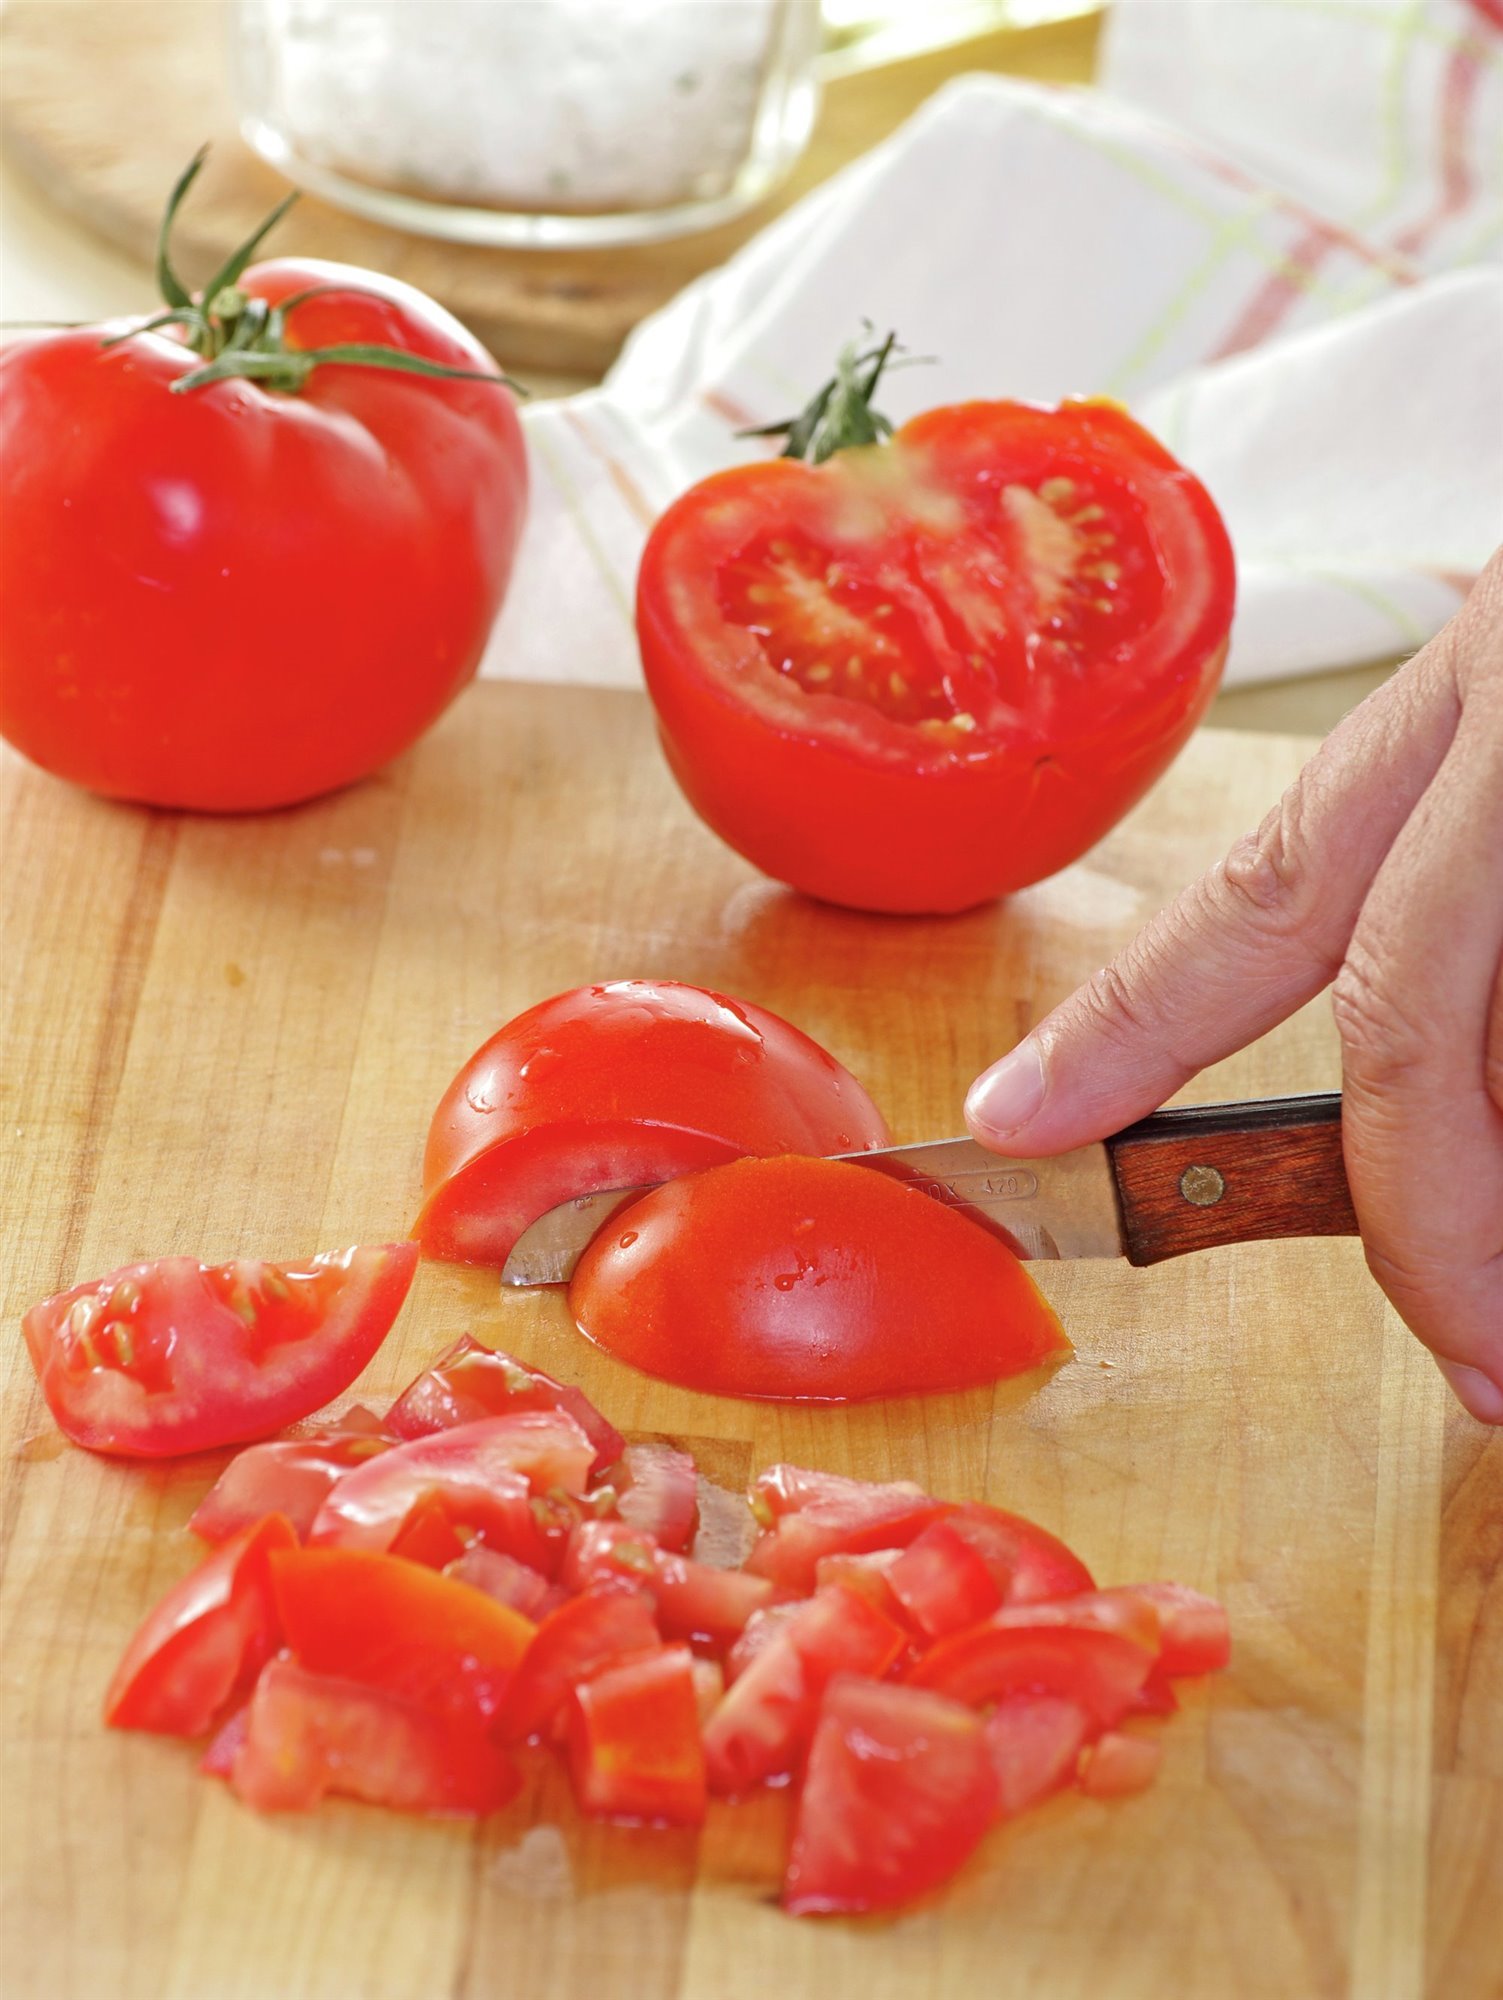 2. Trocea y tritura los tomates